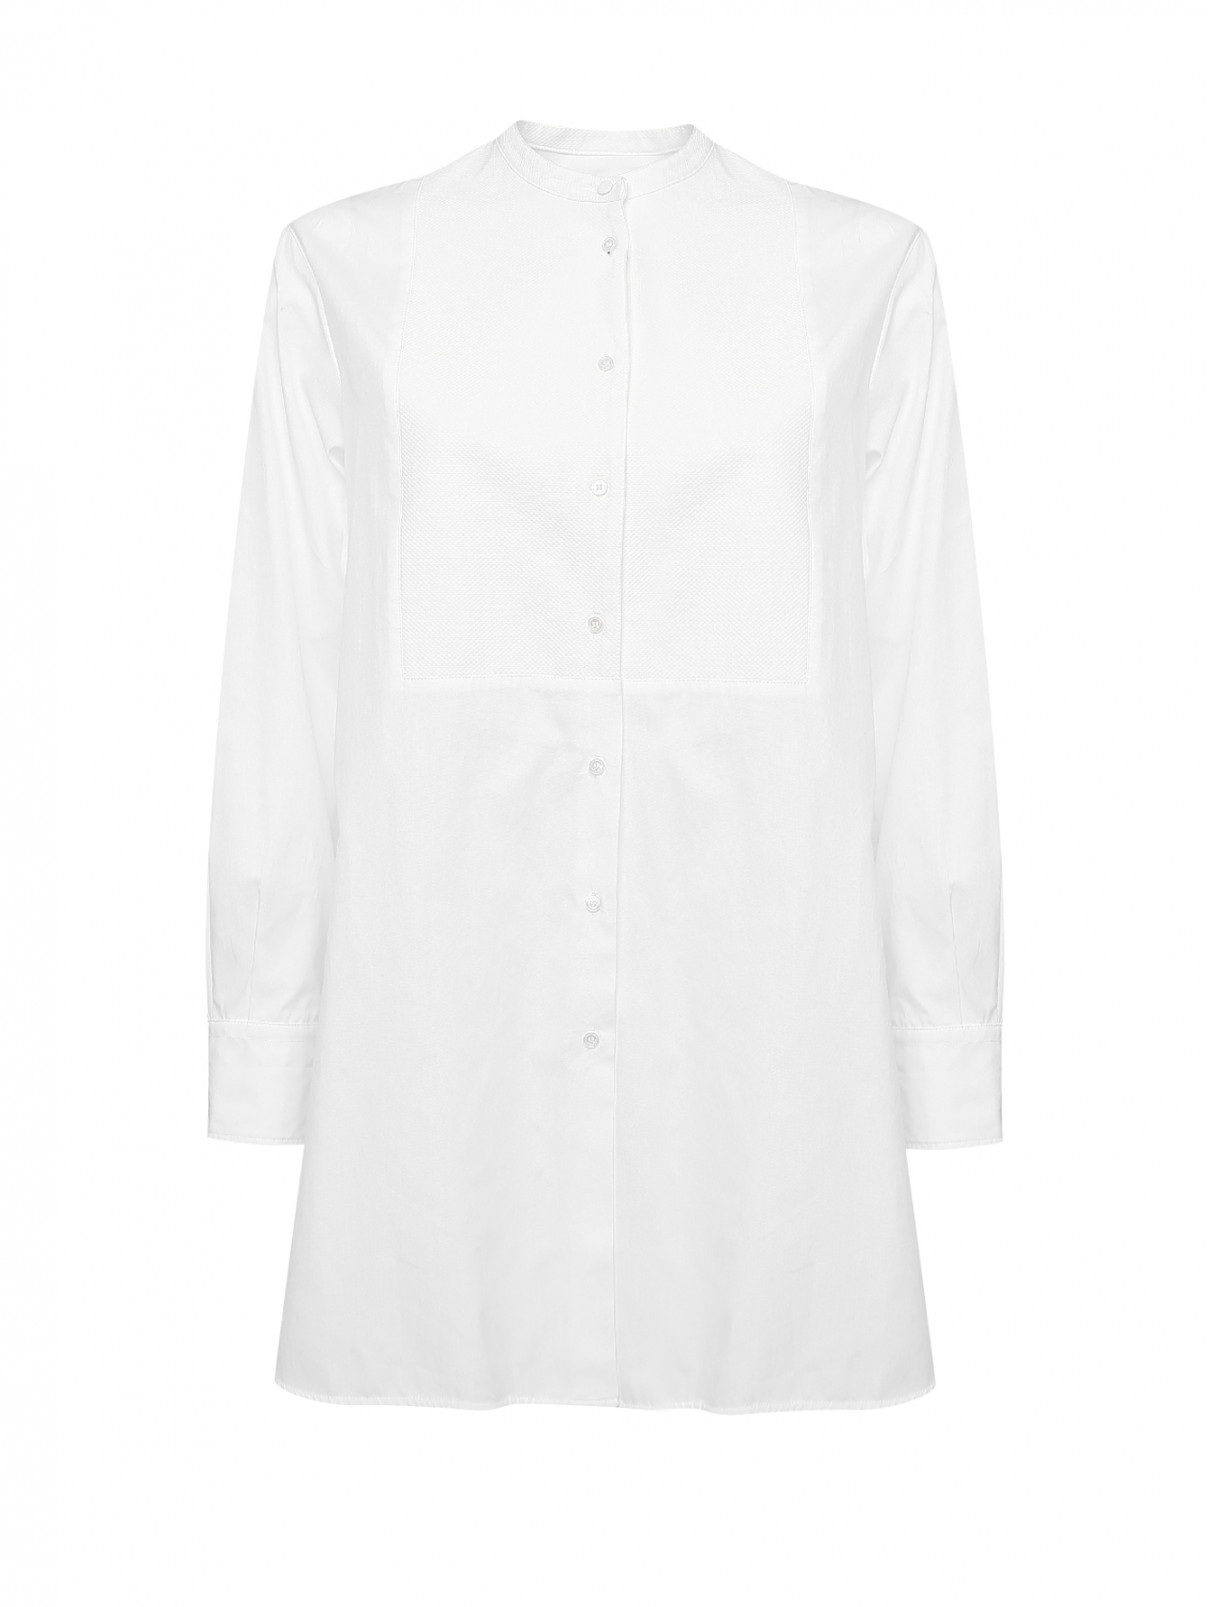 Рубашка удлиненная из хлопка Weekend Max Mara  –  Общий вид  – Цвет:  Белый